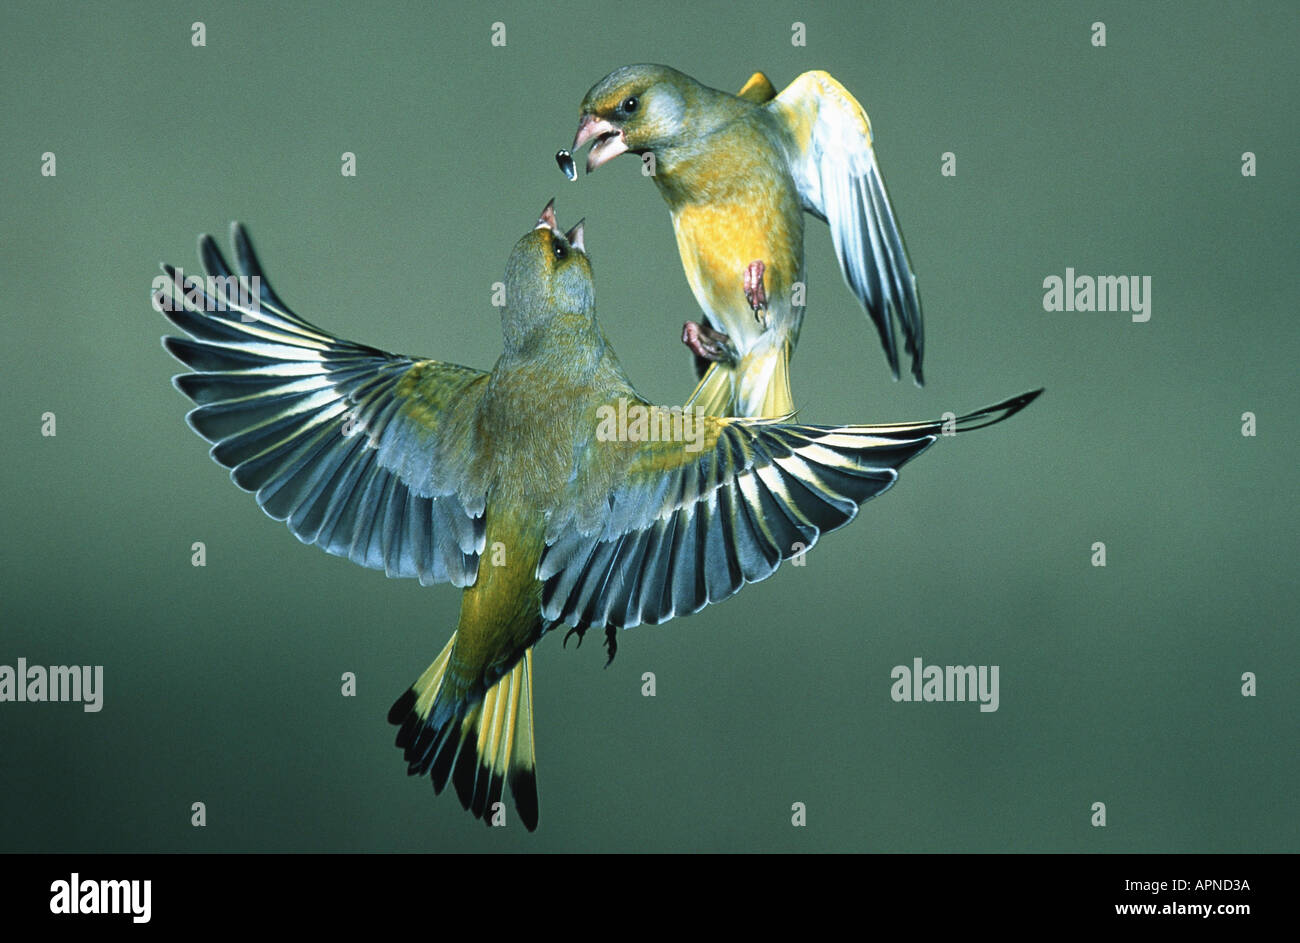 Western verderón (Carduelis chloris), volando, dos individuos pelearse por un maíz Foto de stock